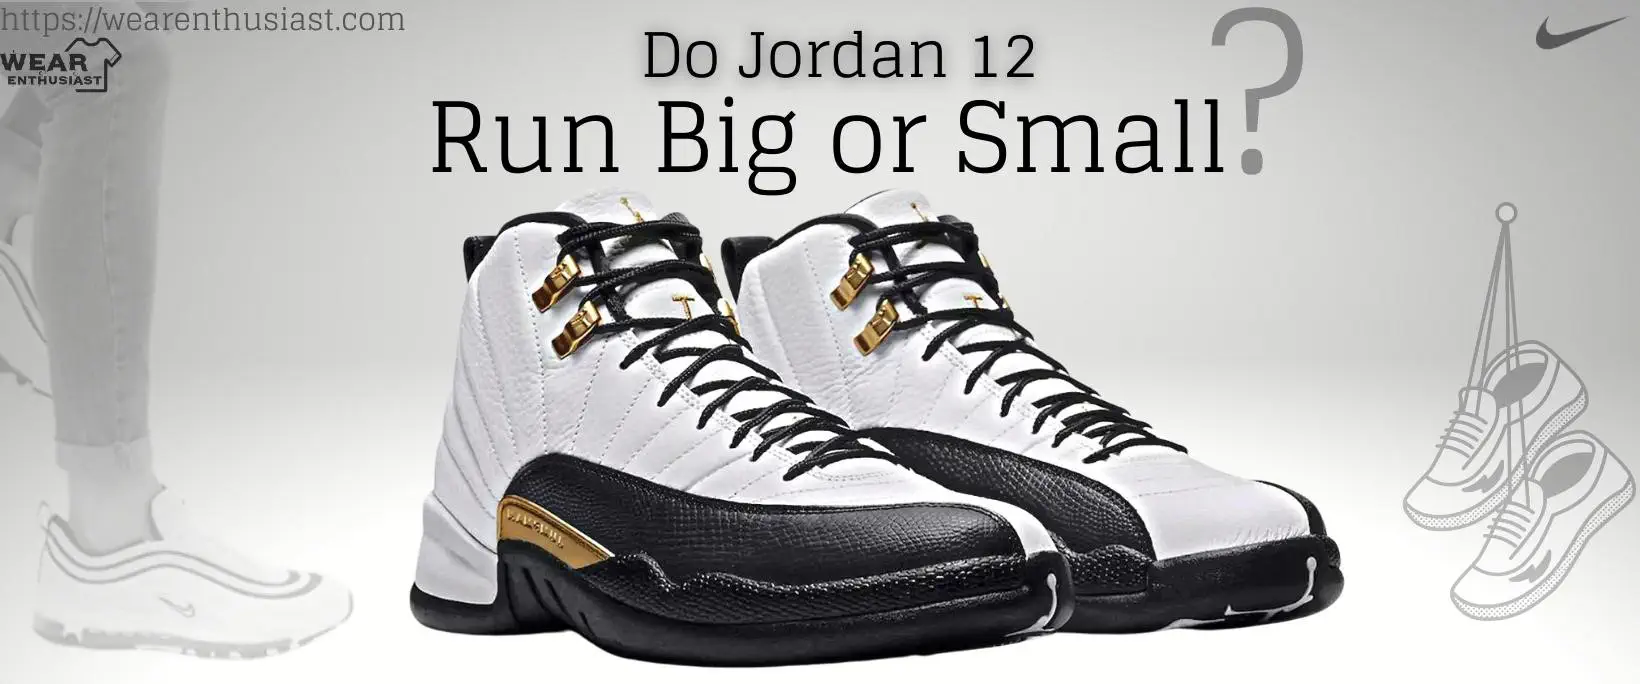 Do Jordan 12 Run Big or Small?